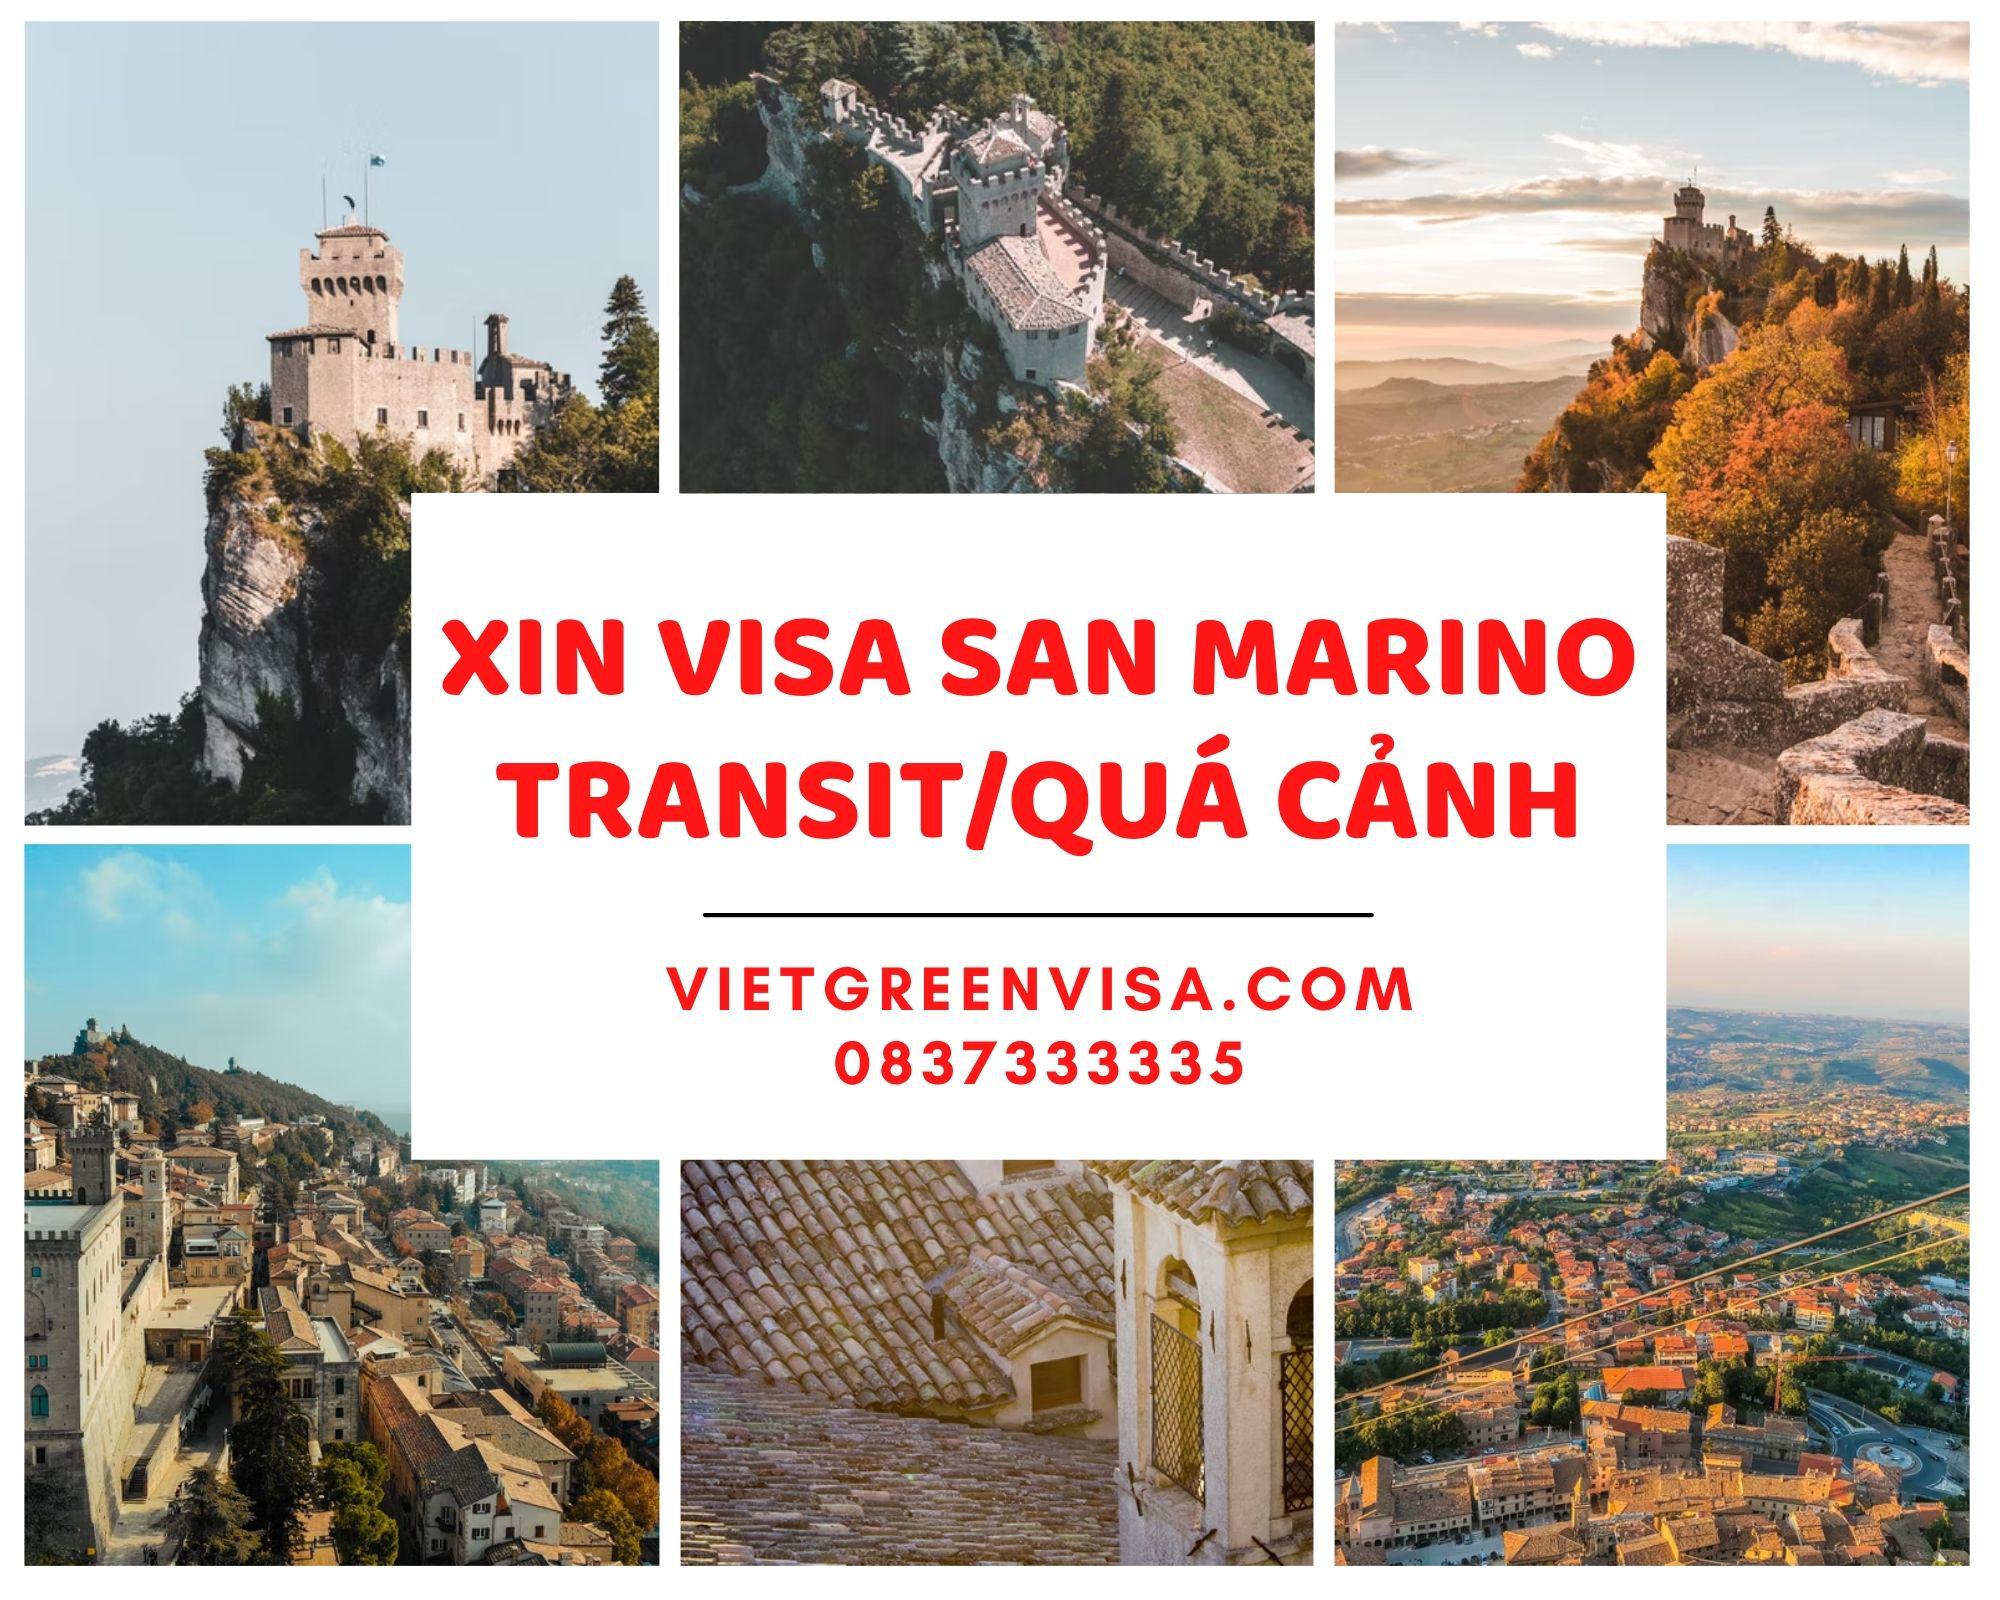 Xin visa quá cảnh qua San Marino, visa transit uy tín